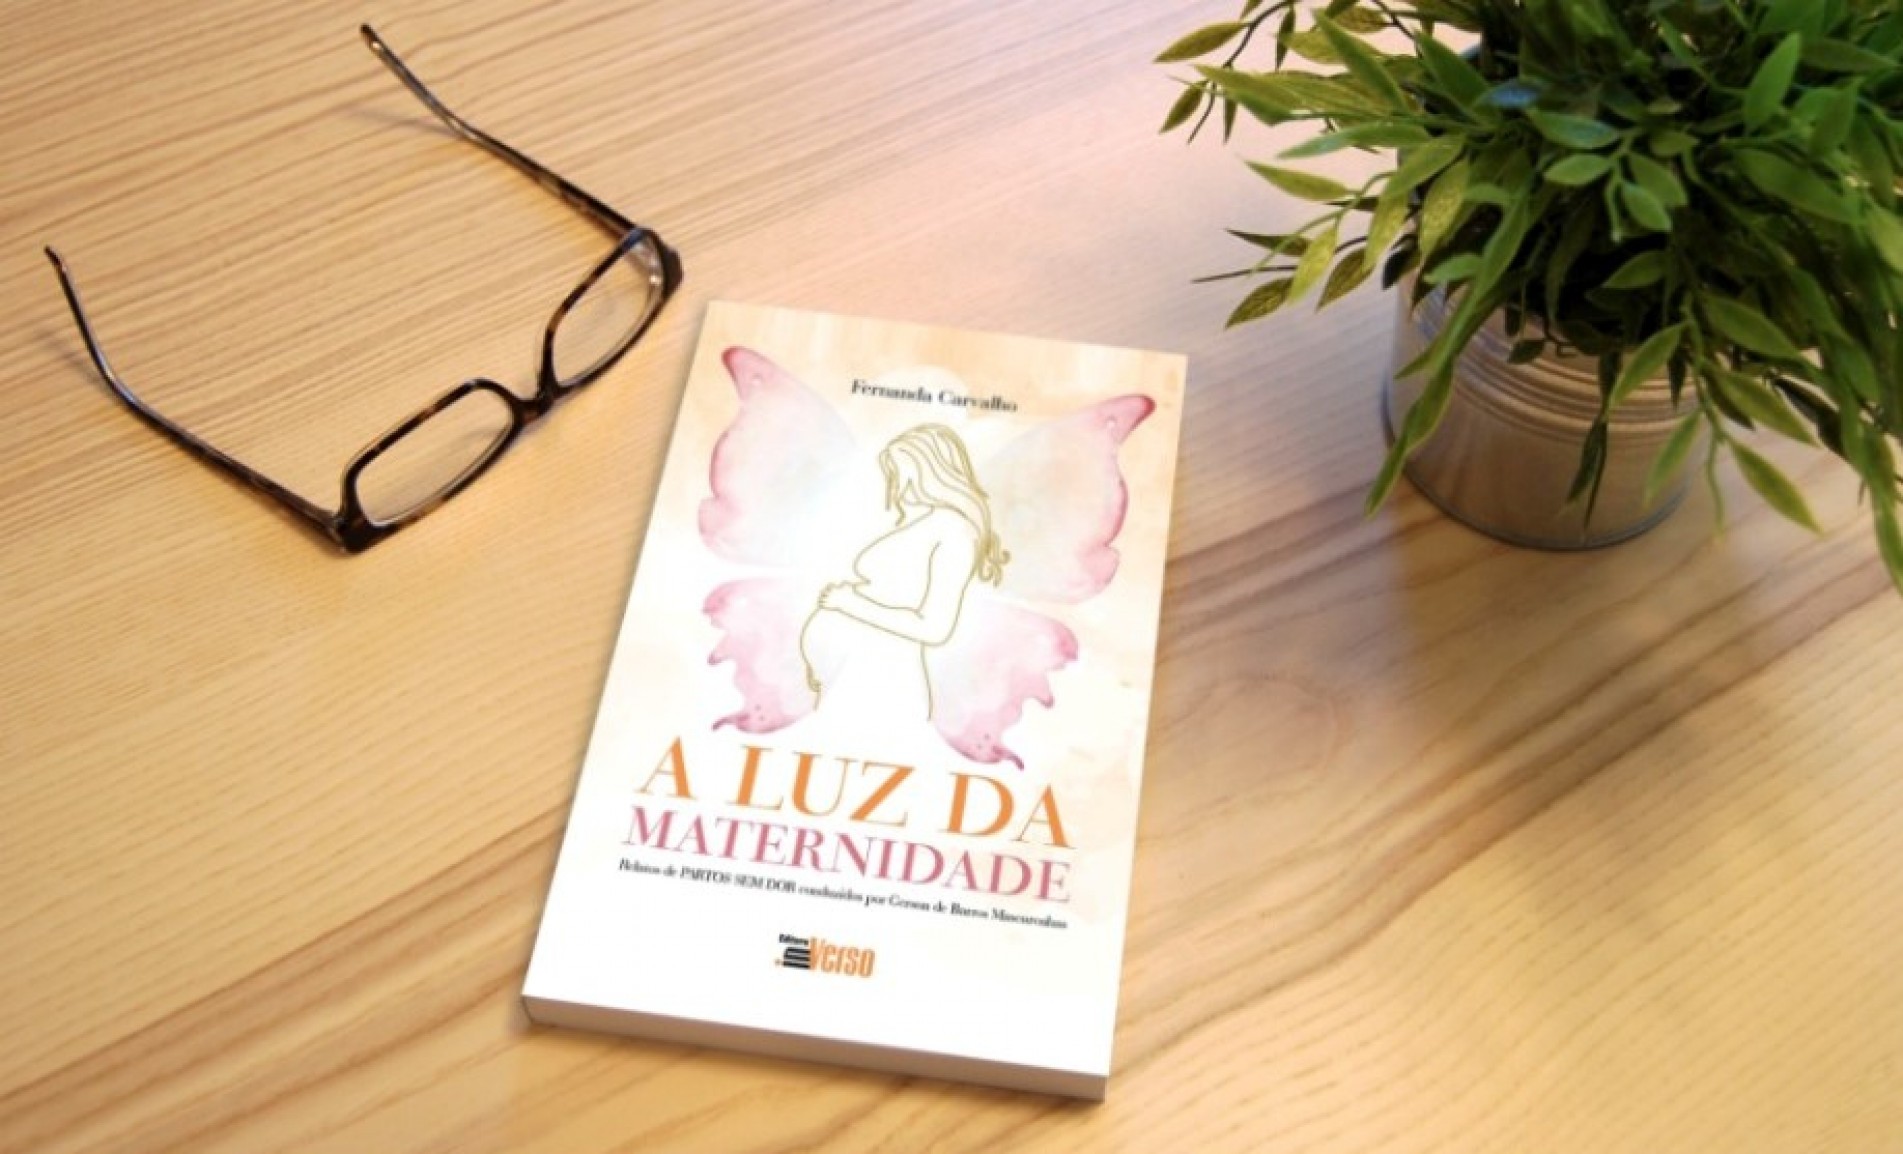 Livro A Luz da Maternidade, da jornalista Fernanda Carvalho, reúne relatos de mulheres que celebram o parto natural